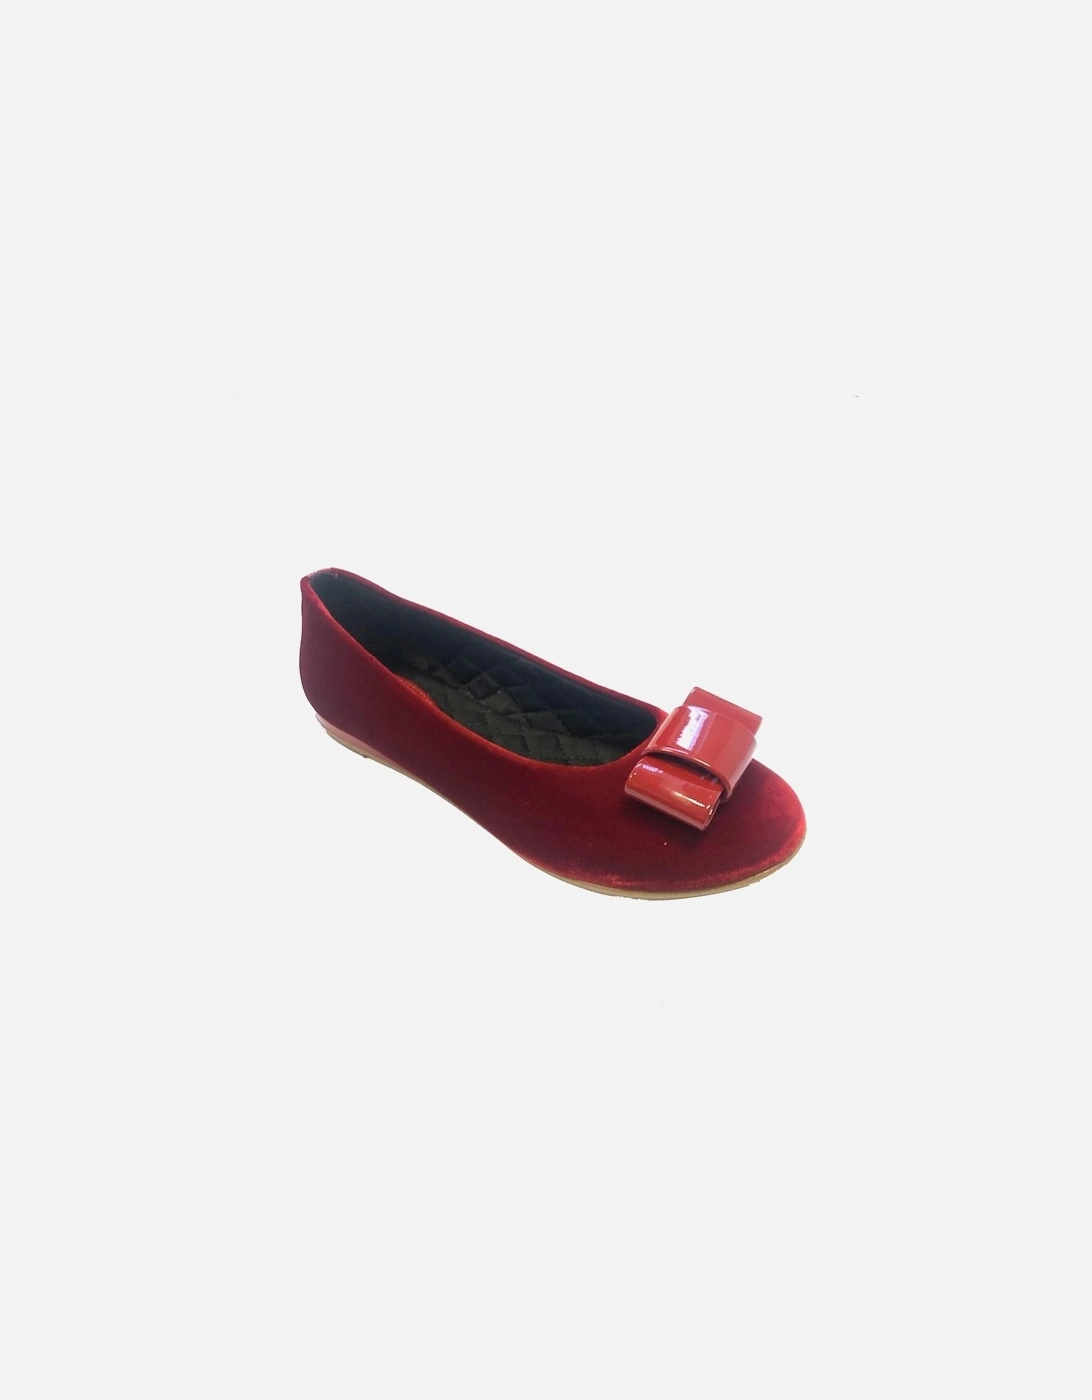 Red Velvet Bow Shoe